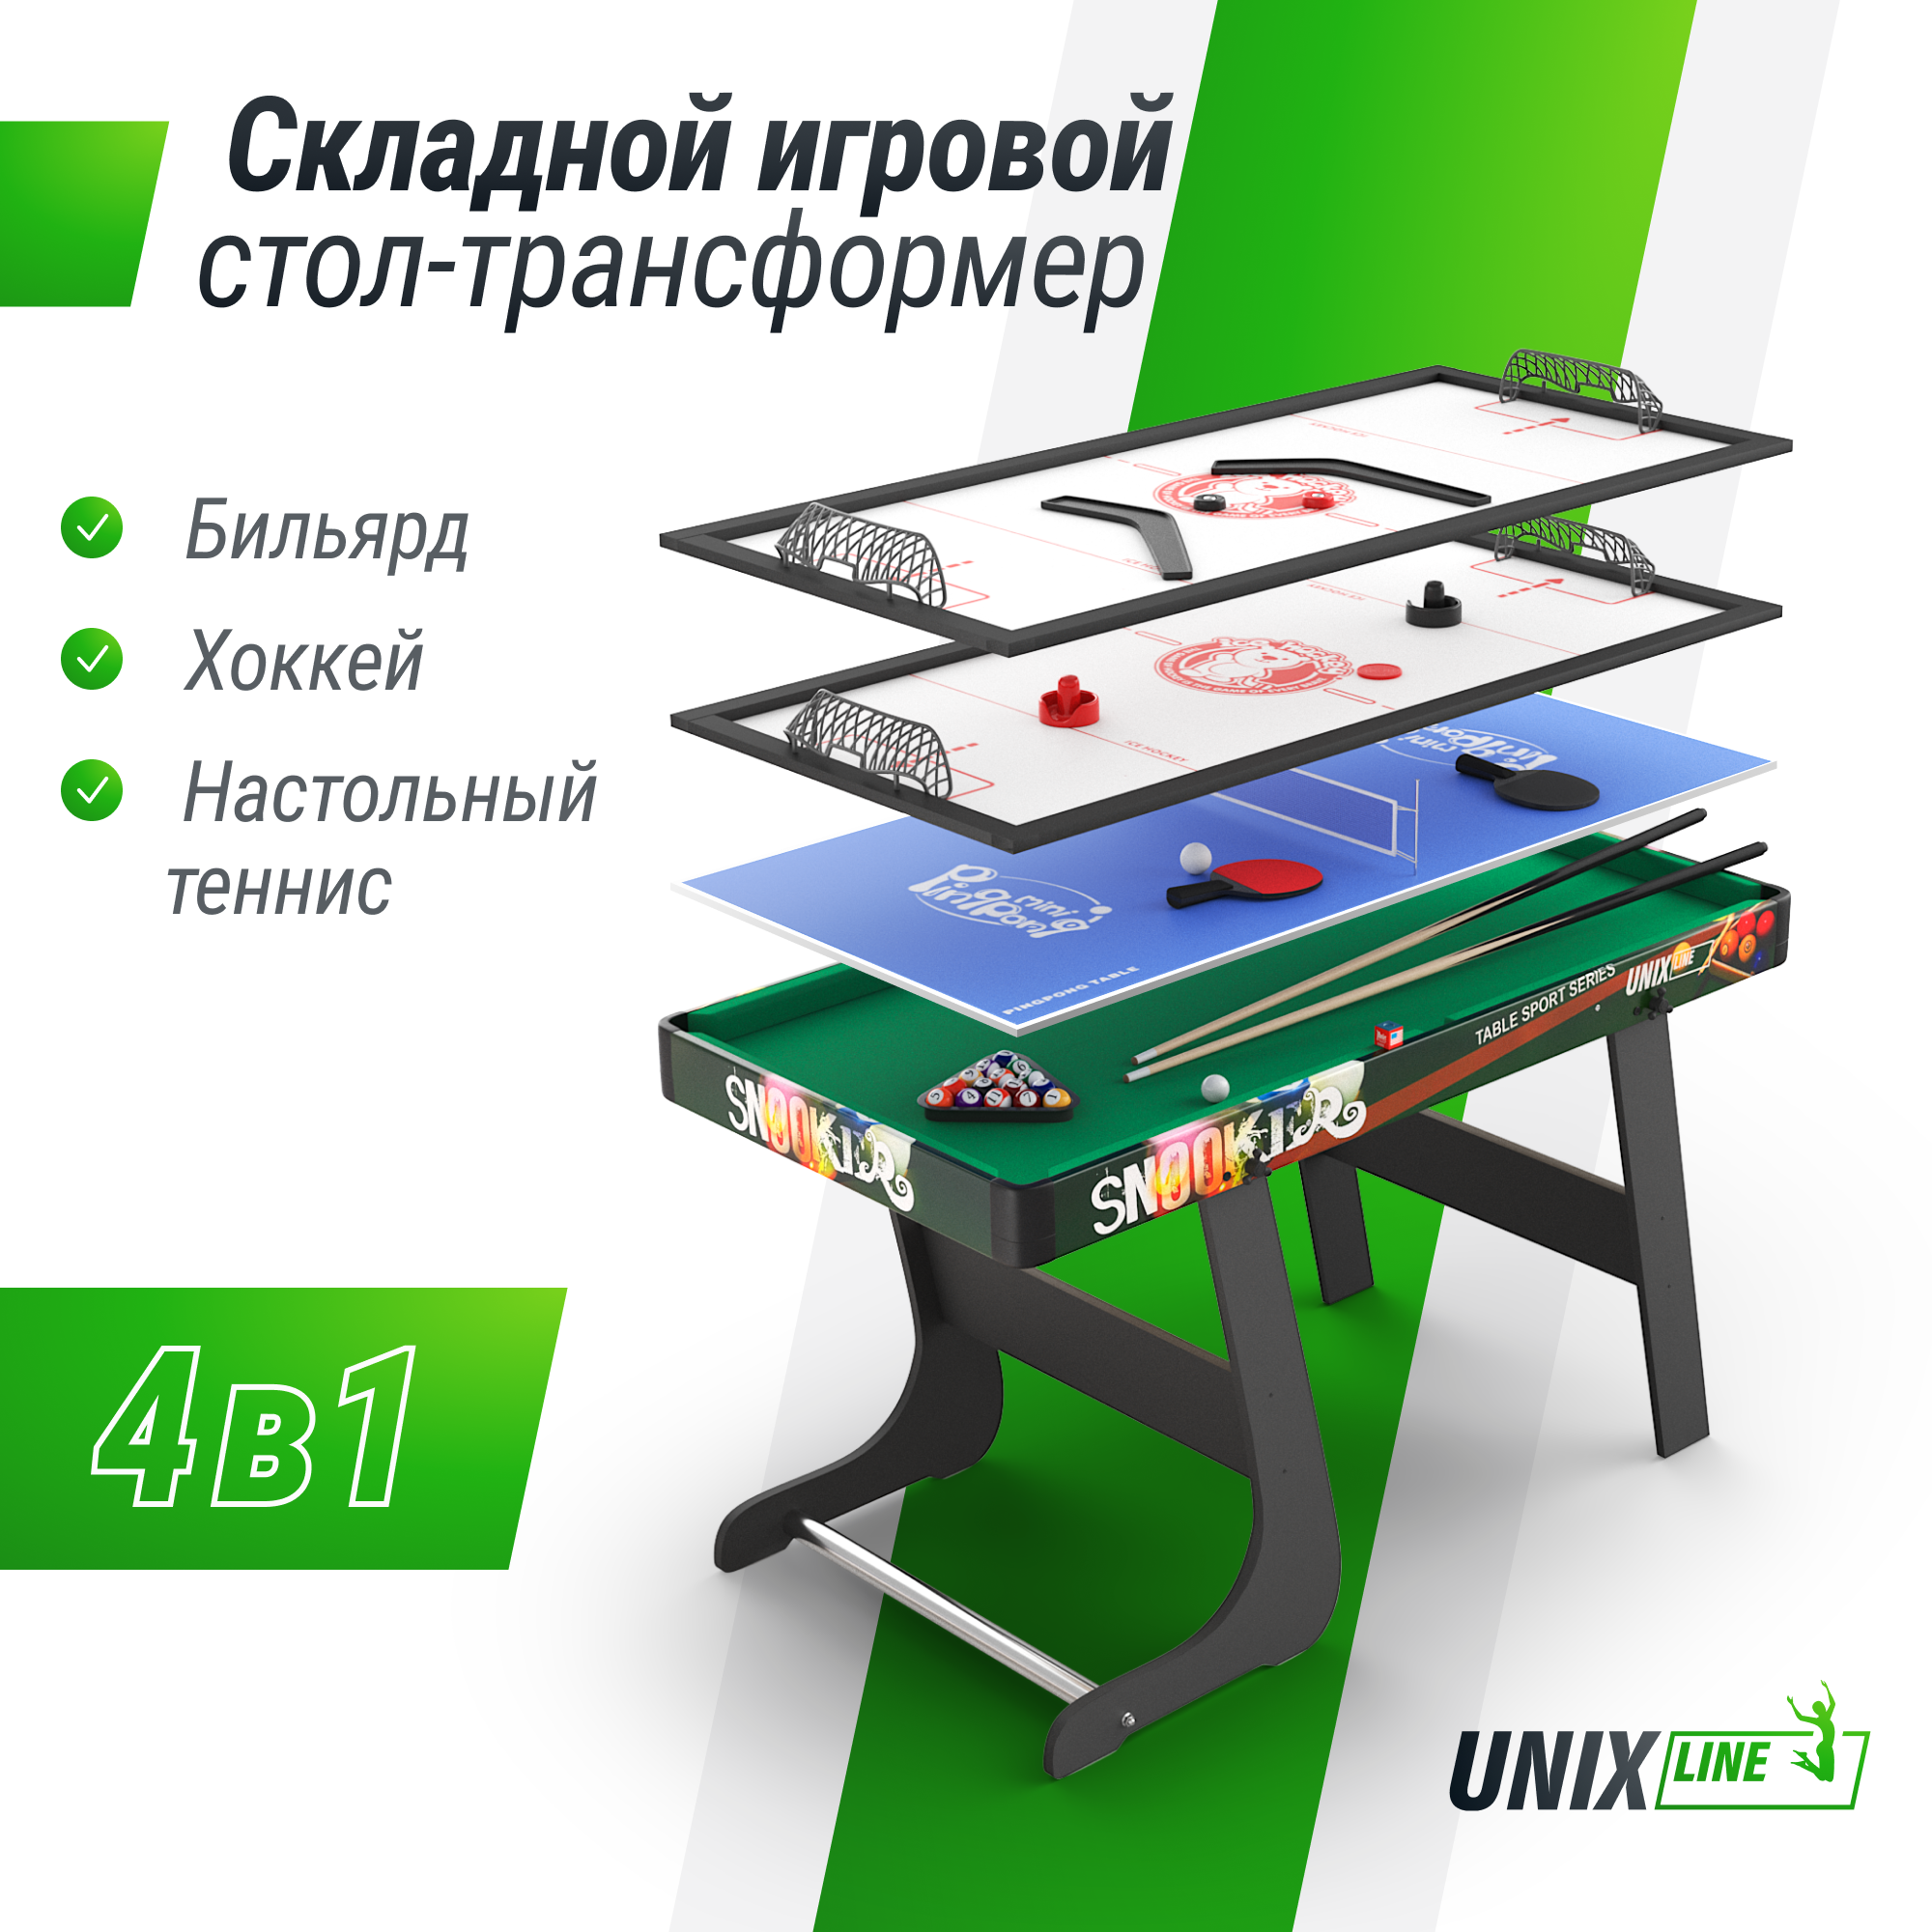 Игровой стол складной UNIX Line Трансформер 4 в 1 (125х63 cм) теннисный стол start line leader pro лмдф 25 мм без сетки обрезинен ролики